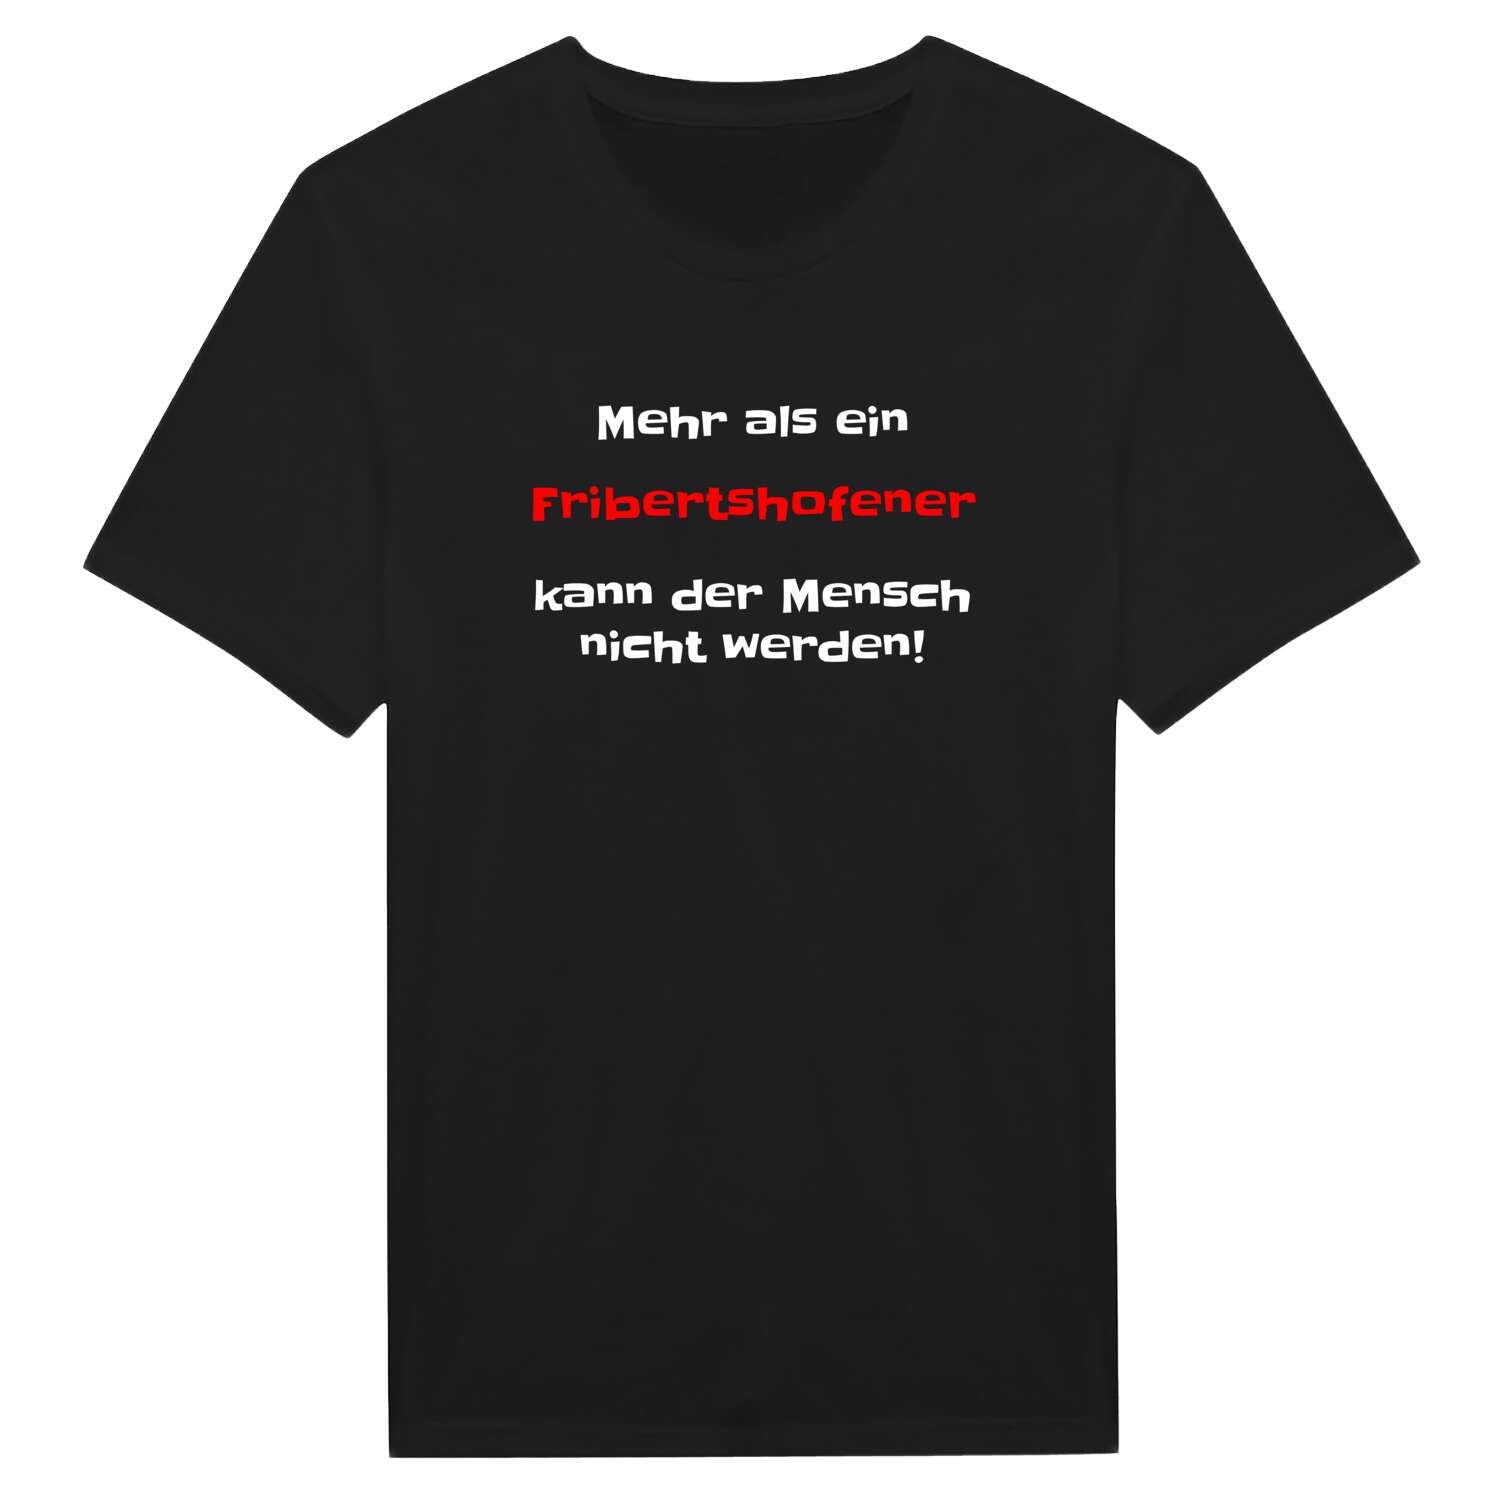 Fribertshofen T-Shirt »Mehr als ein«